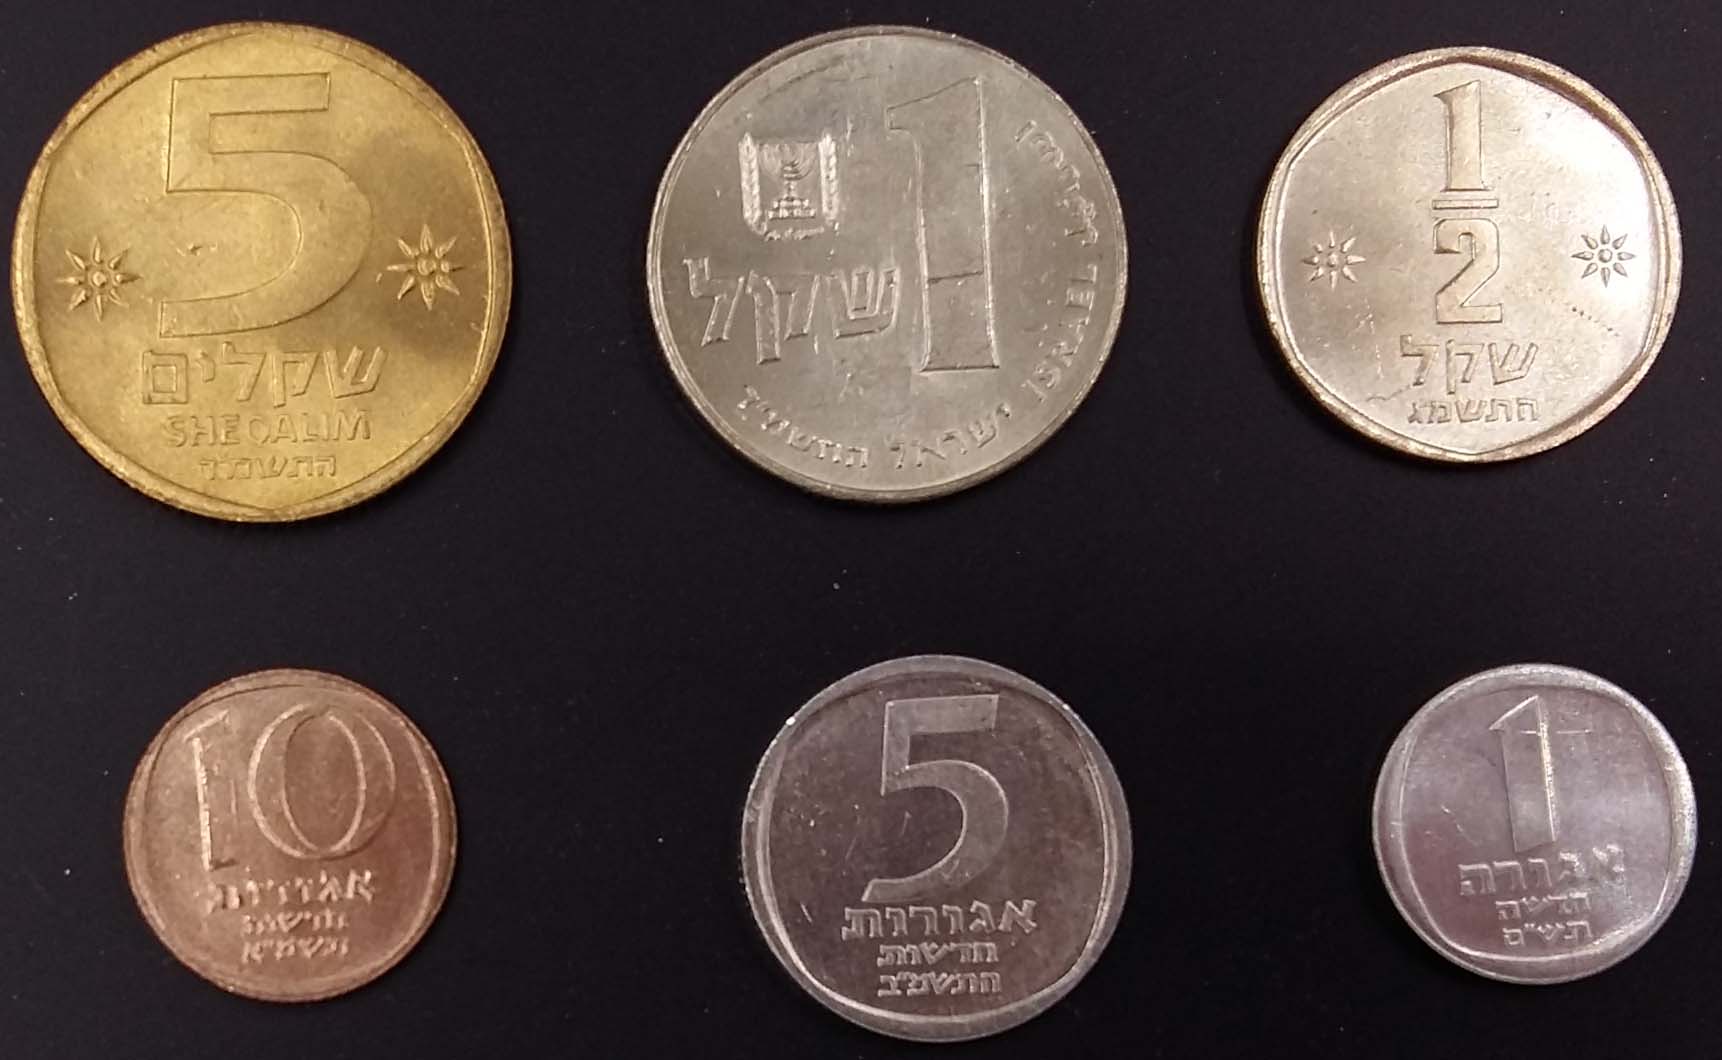 以色列钱币 面值1 5 10阿格拉 0.5 1 5谢克尔 6枚(大图展示)